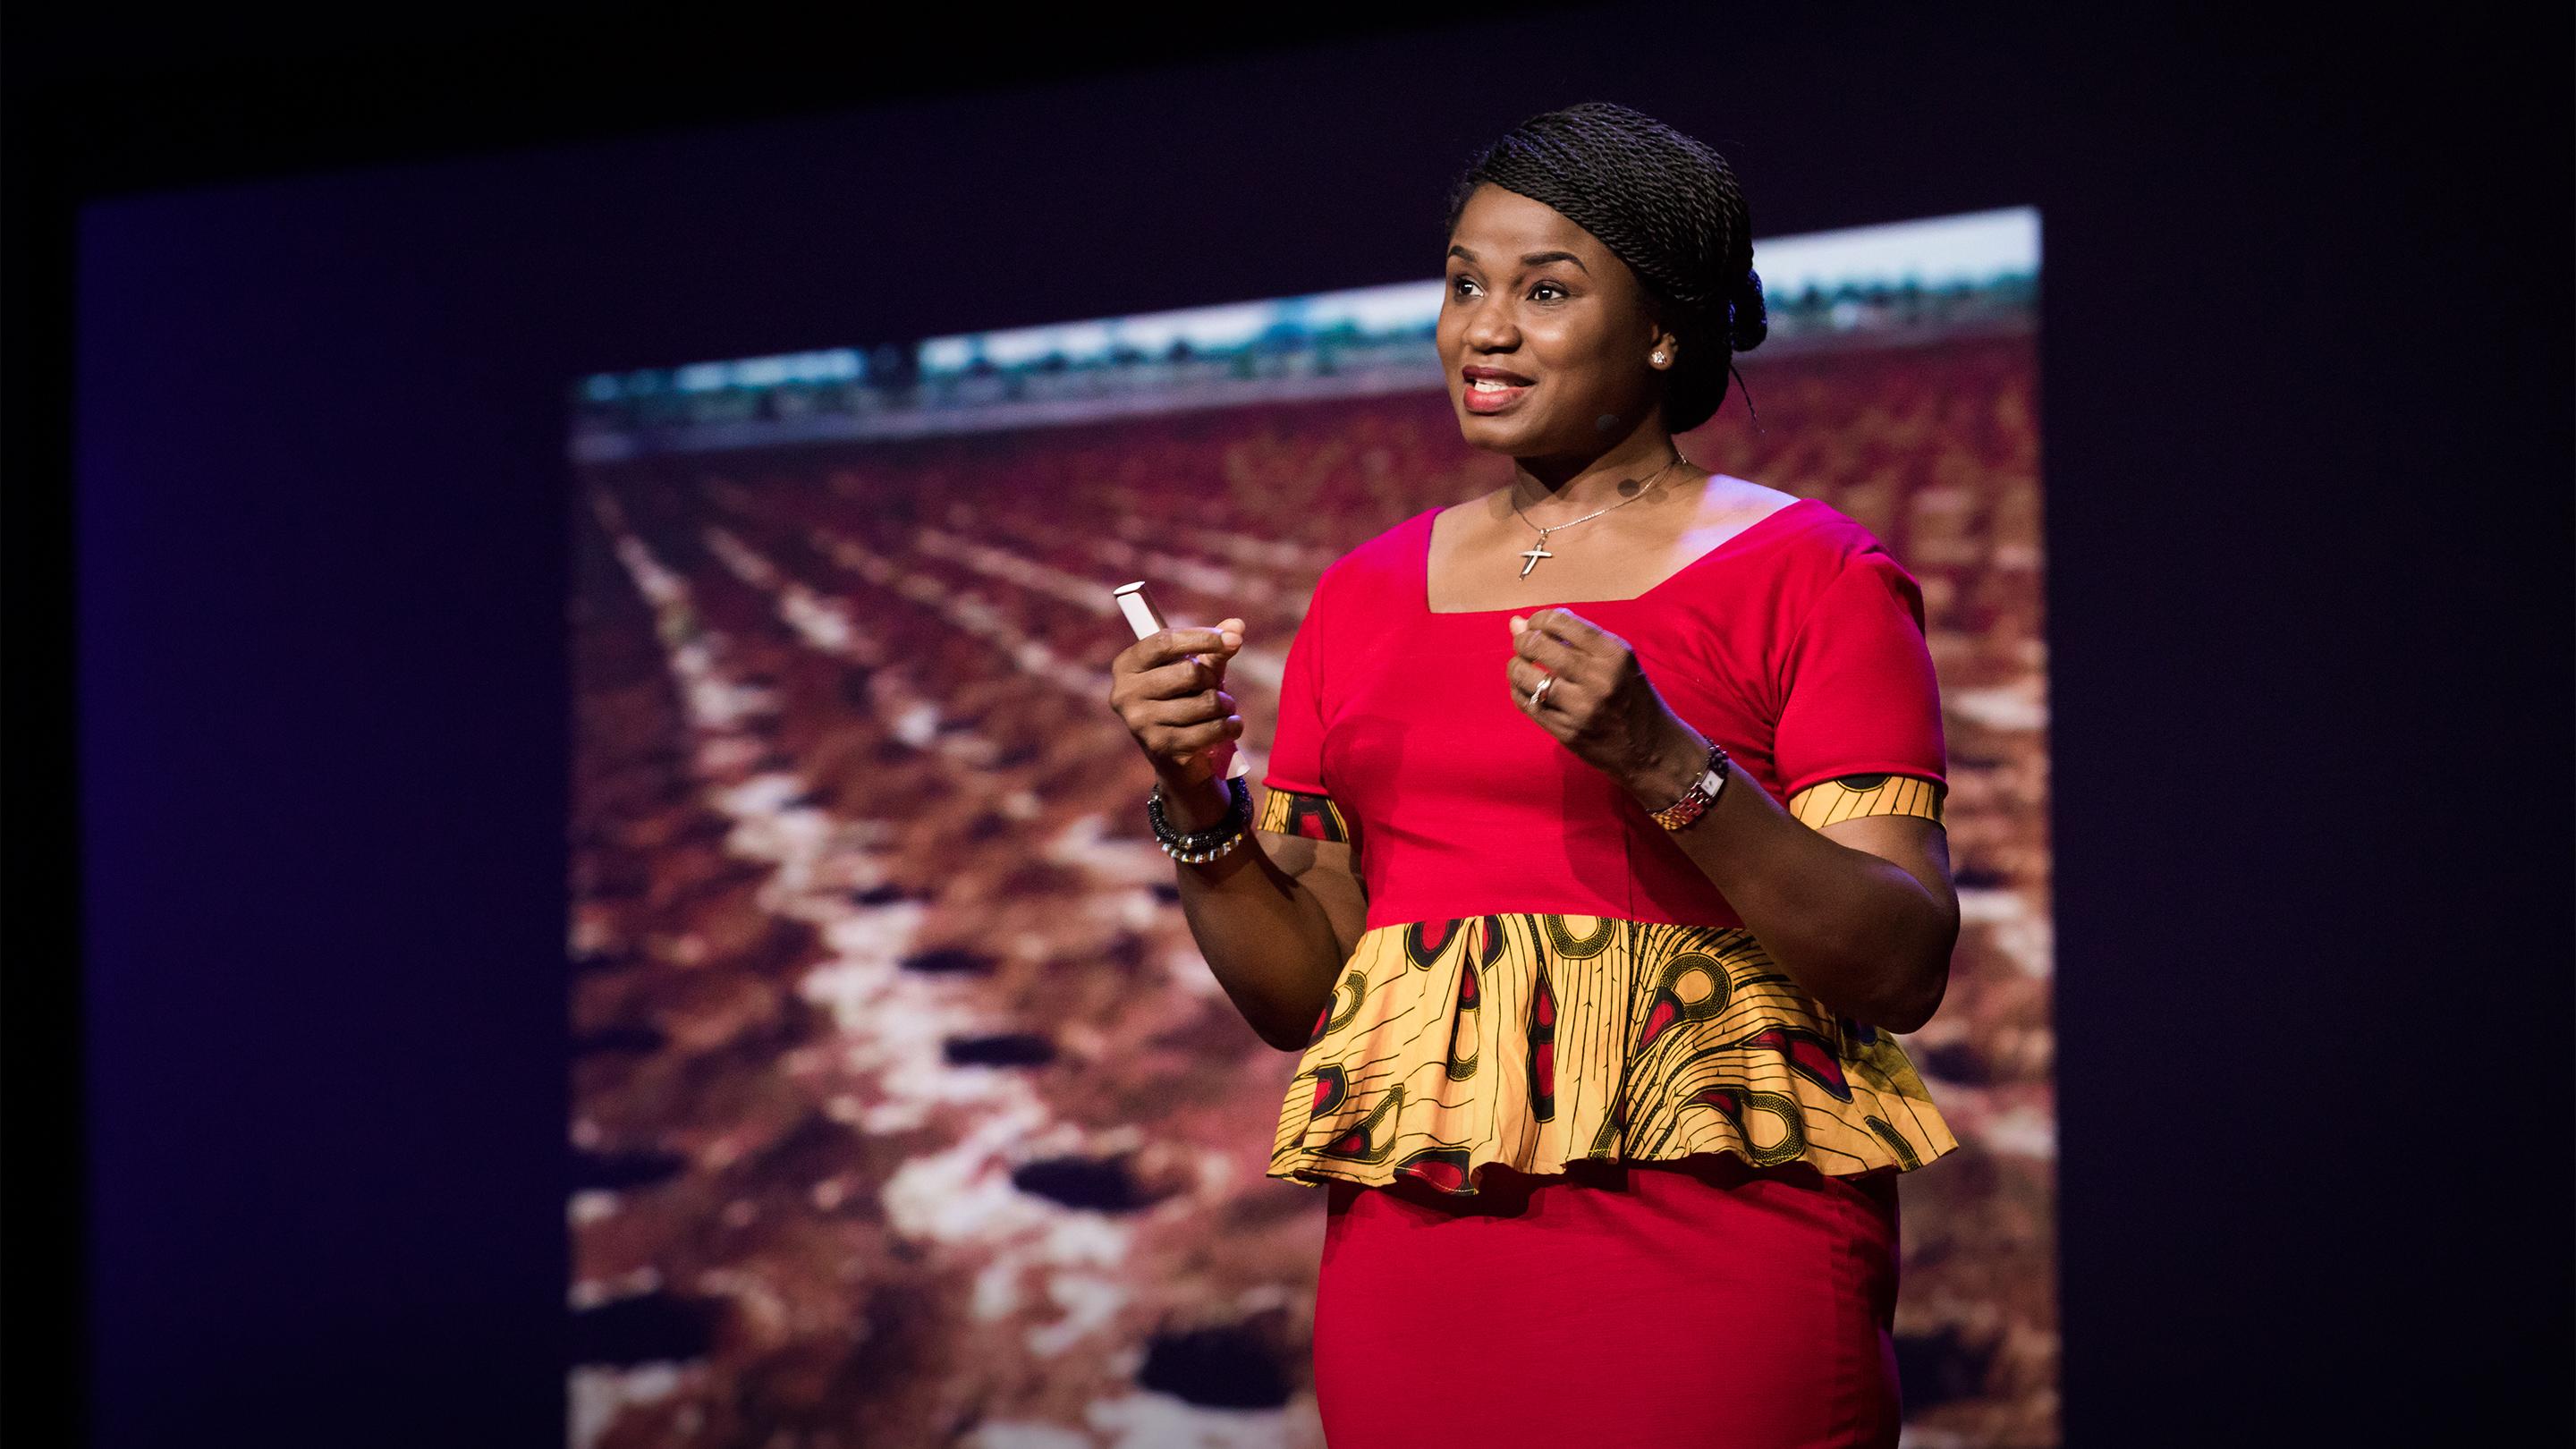 Comment l'Afrique peut utiliser son savoir traditionnel pour progresser | Chika Ezeanya-Esiobu